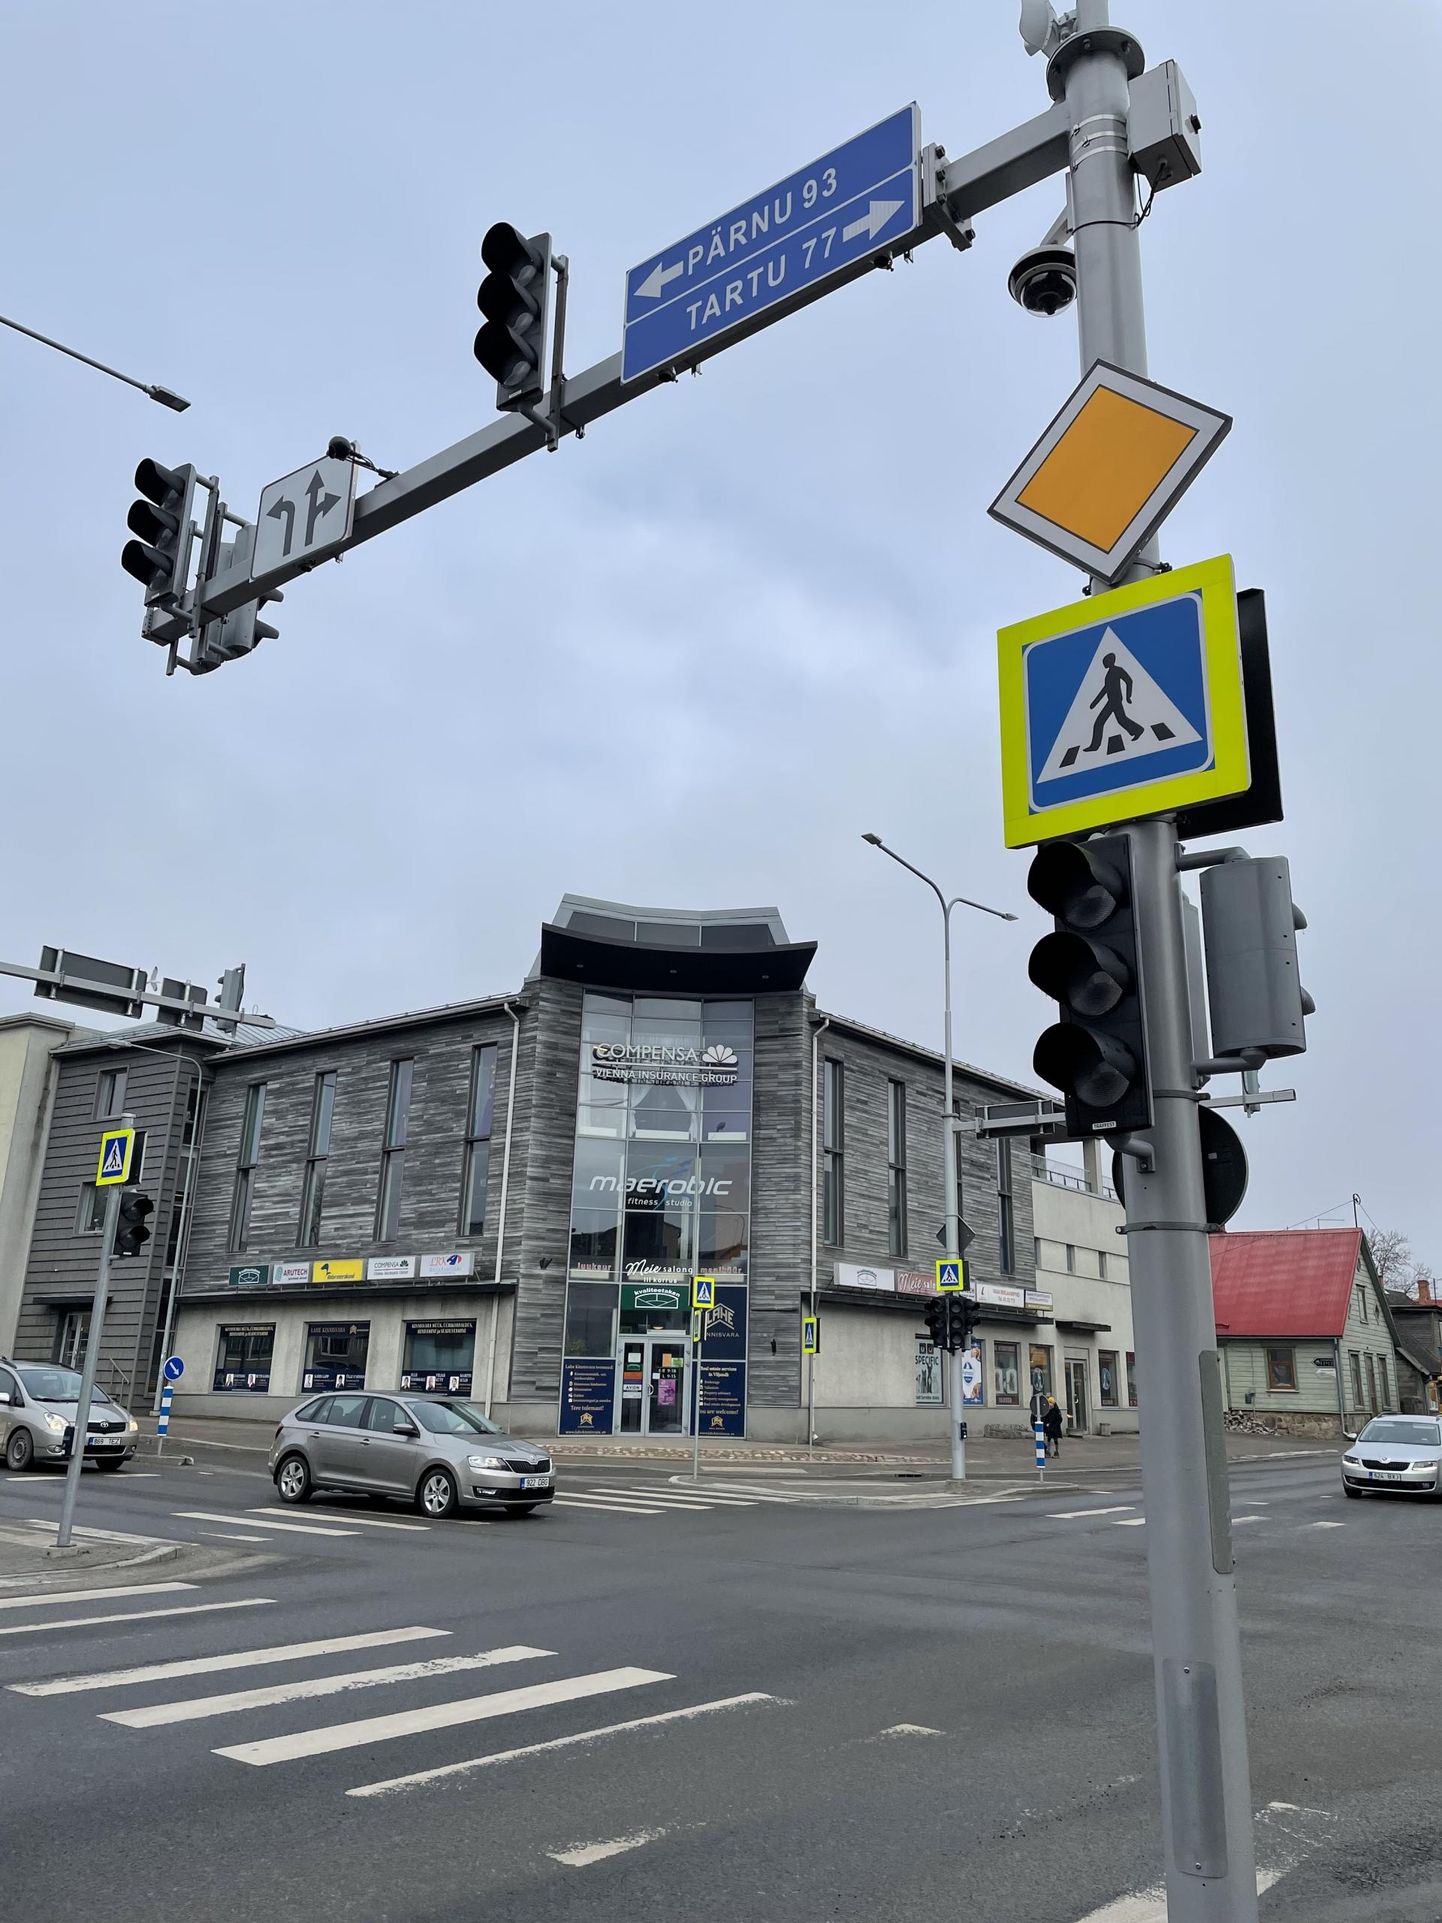 Viljandis olid Jakobsoni ja Tallinna tänava foorid täna ennelõunal kaablirikke tõttu pimedad. Nüüd on rike likvideeritud ja foorid põlevad.